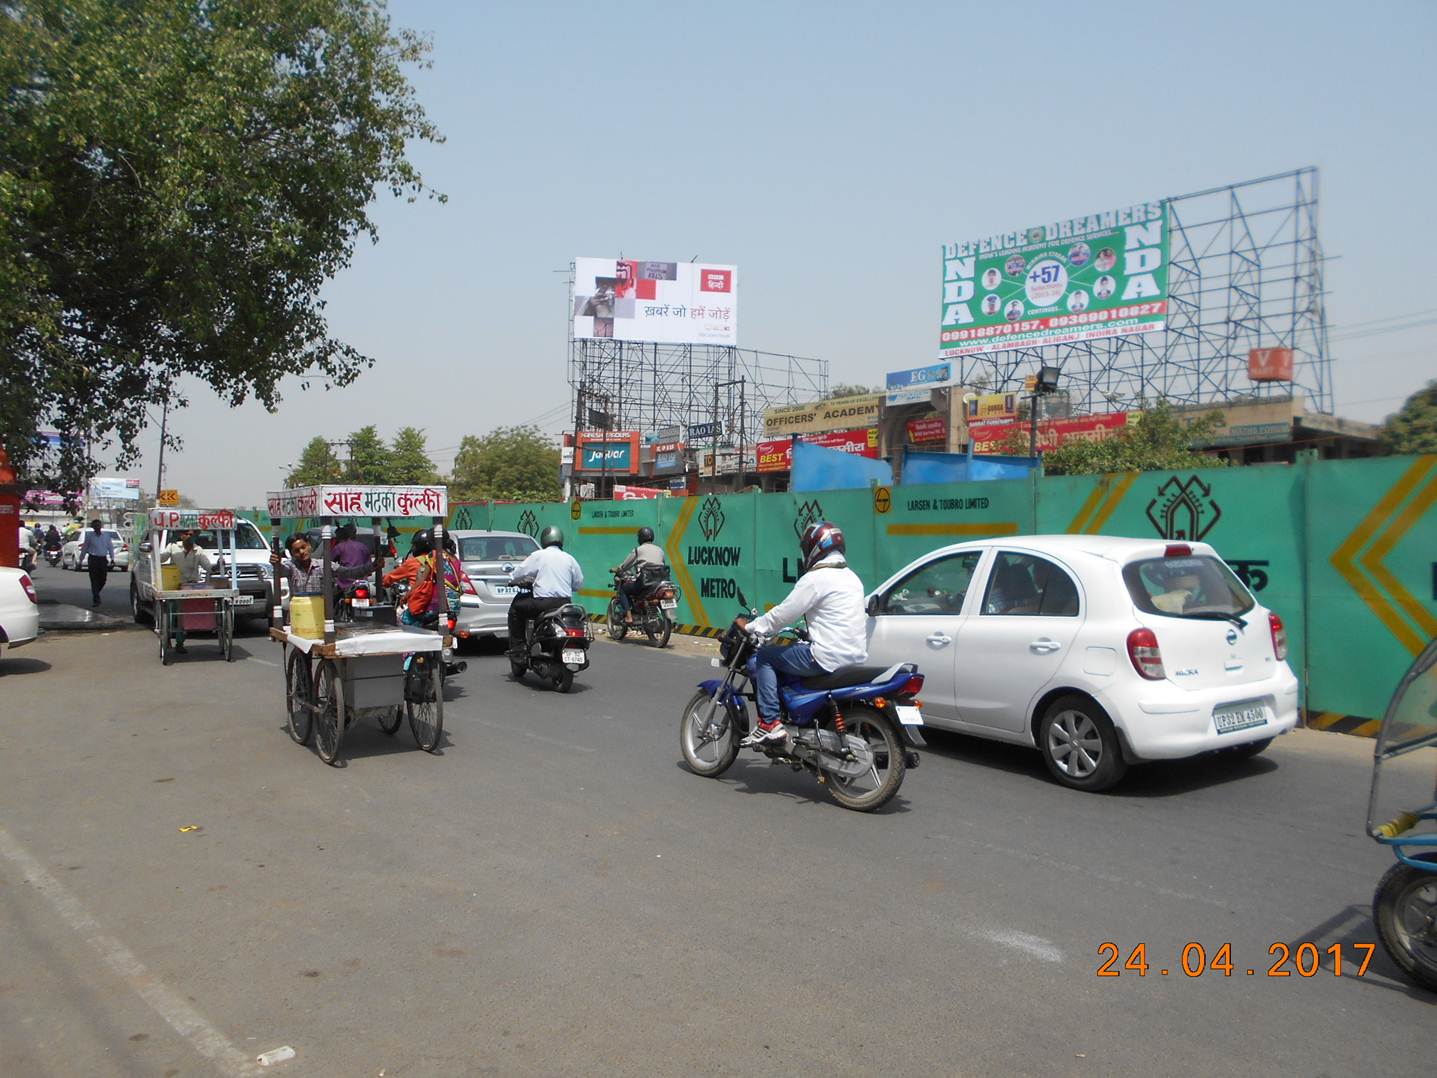 Nr. Bhoothnath Market, Lucknow